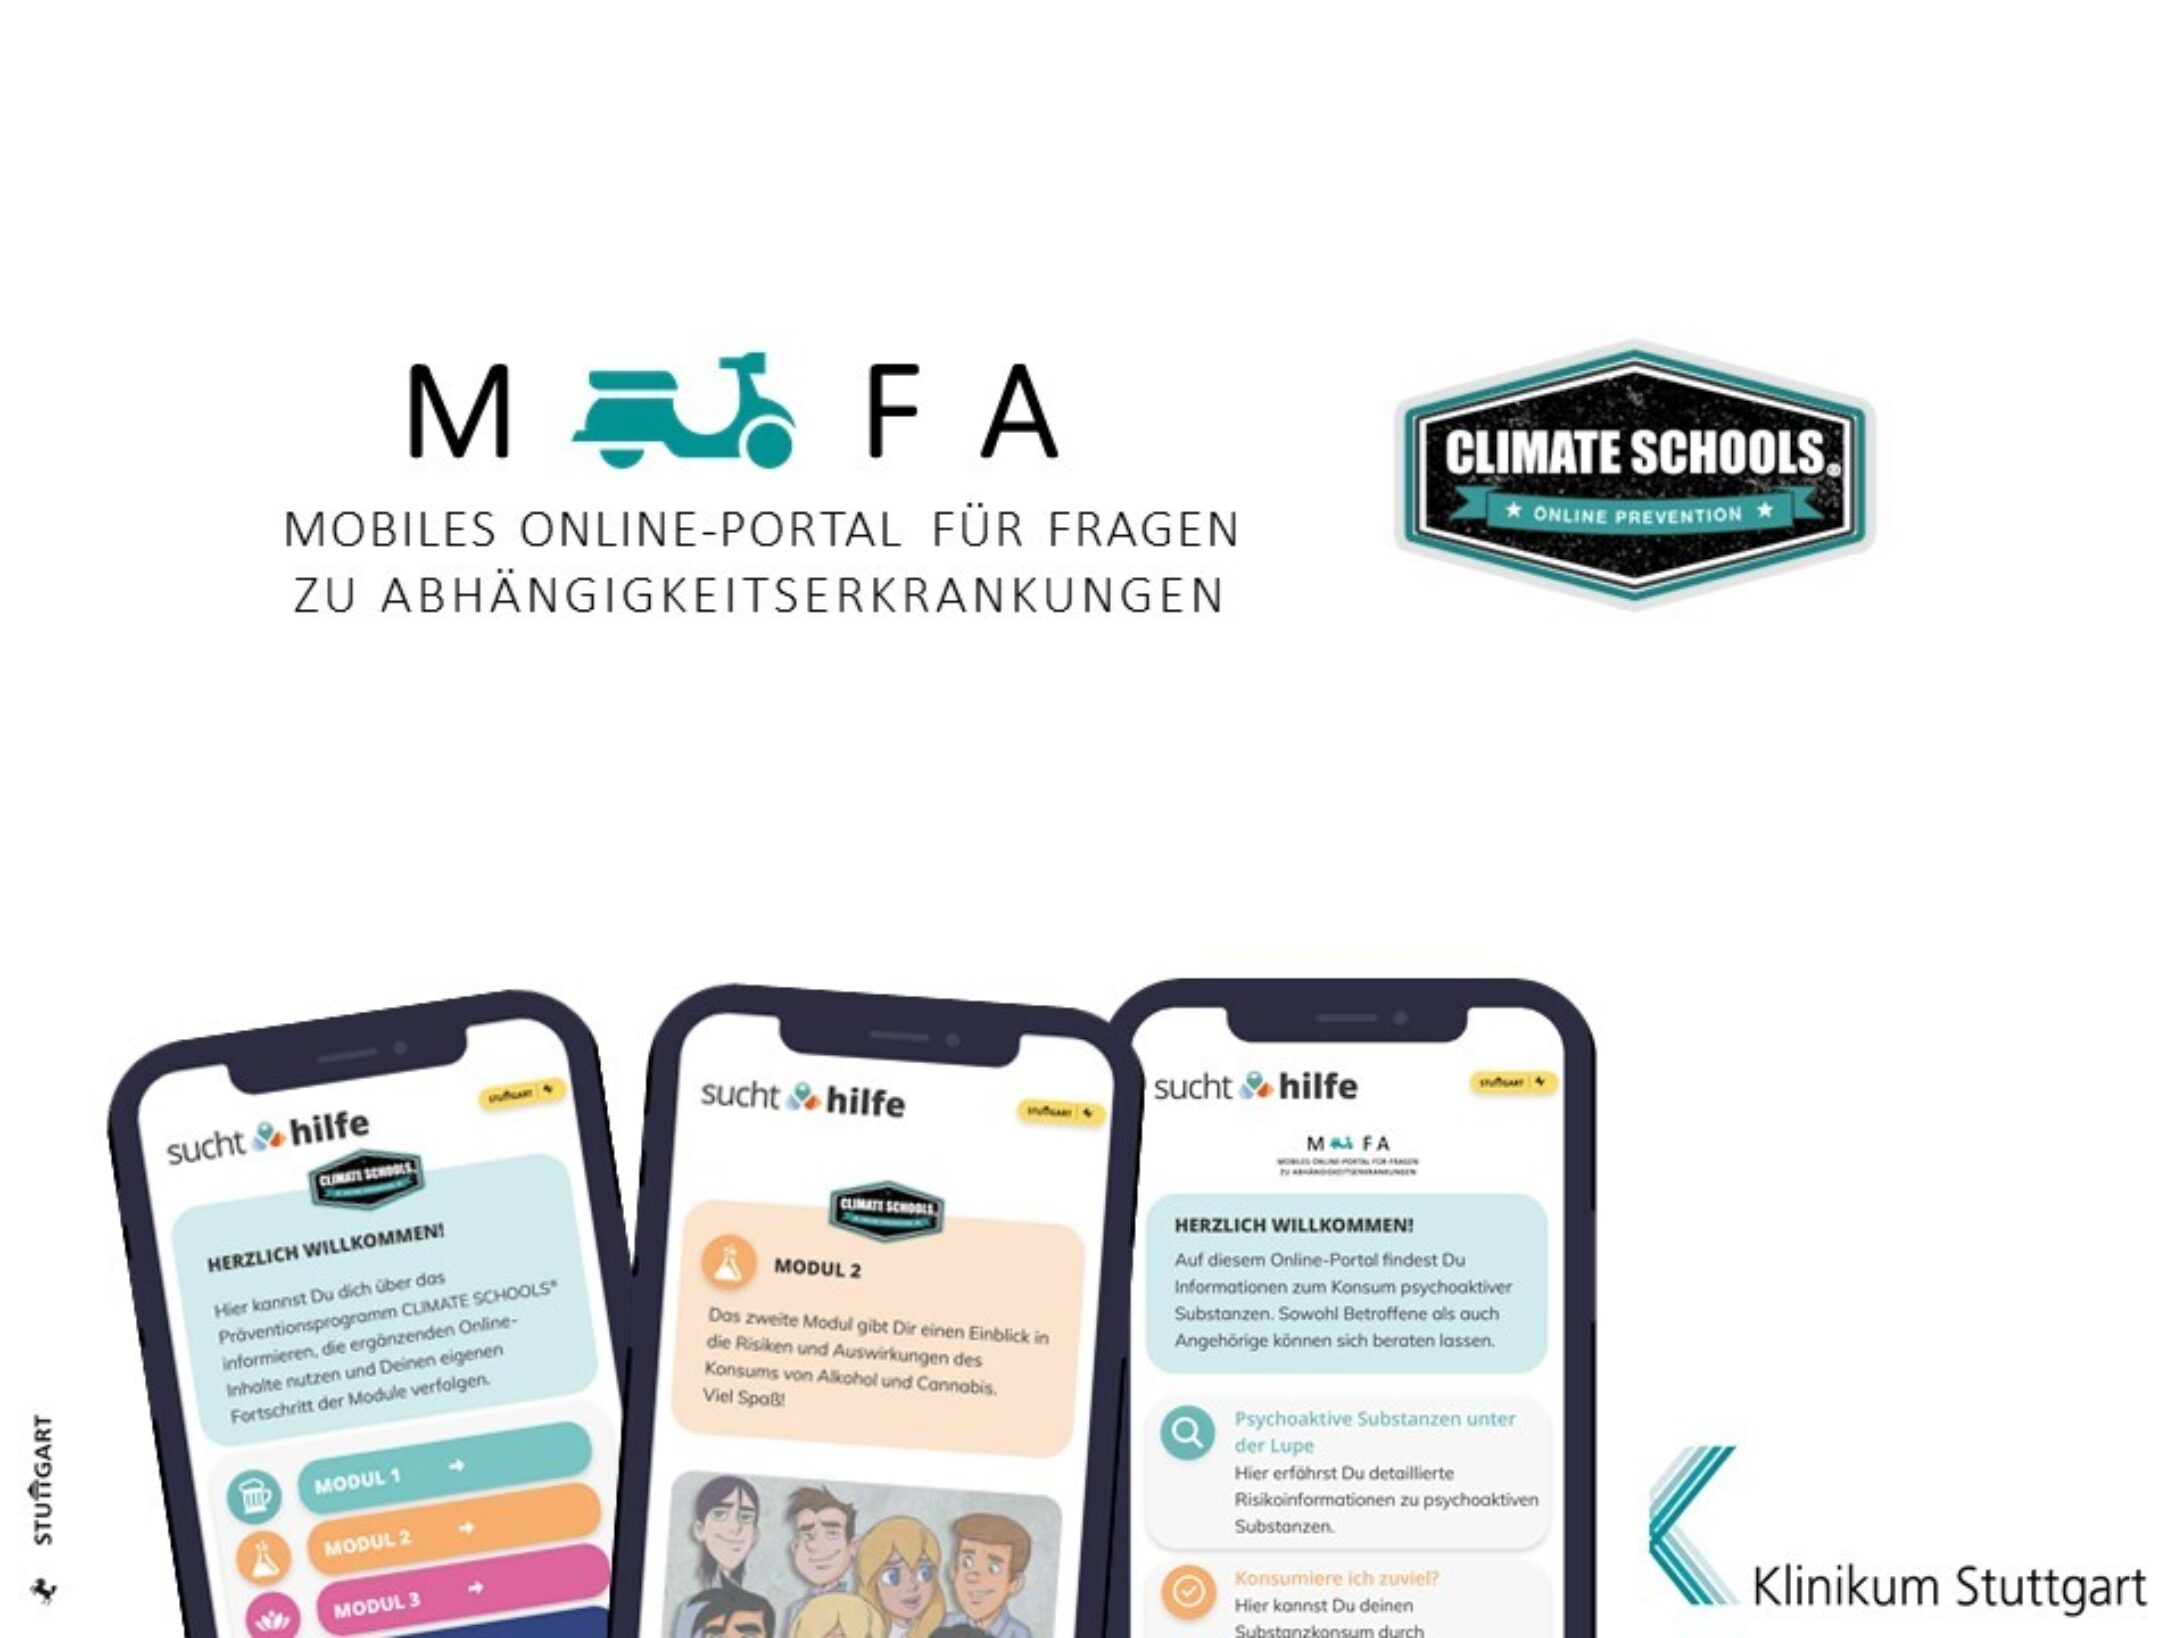 Im oberen Bereich des Bilds ist das Projektlogo "MOFA" und "CLIMATE SCHOOL" zu sehen. Im unteren Teil des Bildes sind drei Smartphones zu sehen, auf denen jeweils exemplarisch das mobile Onlineportal dargestellt ist.